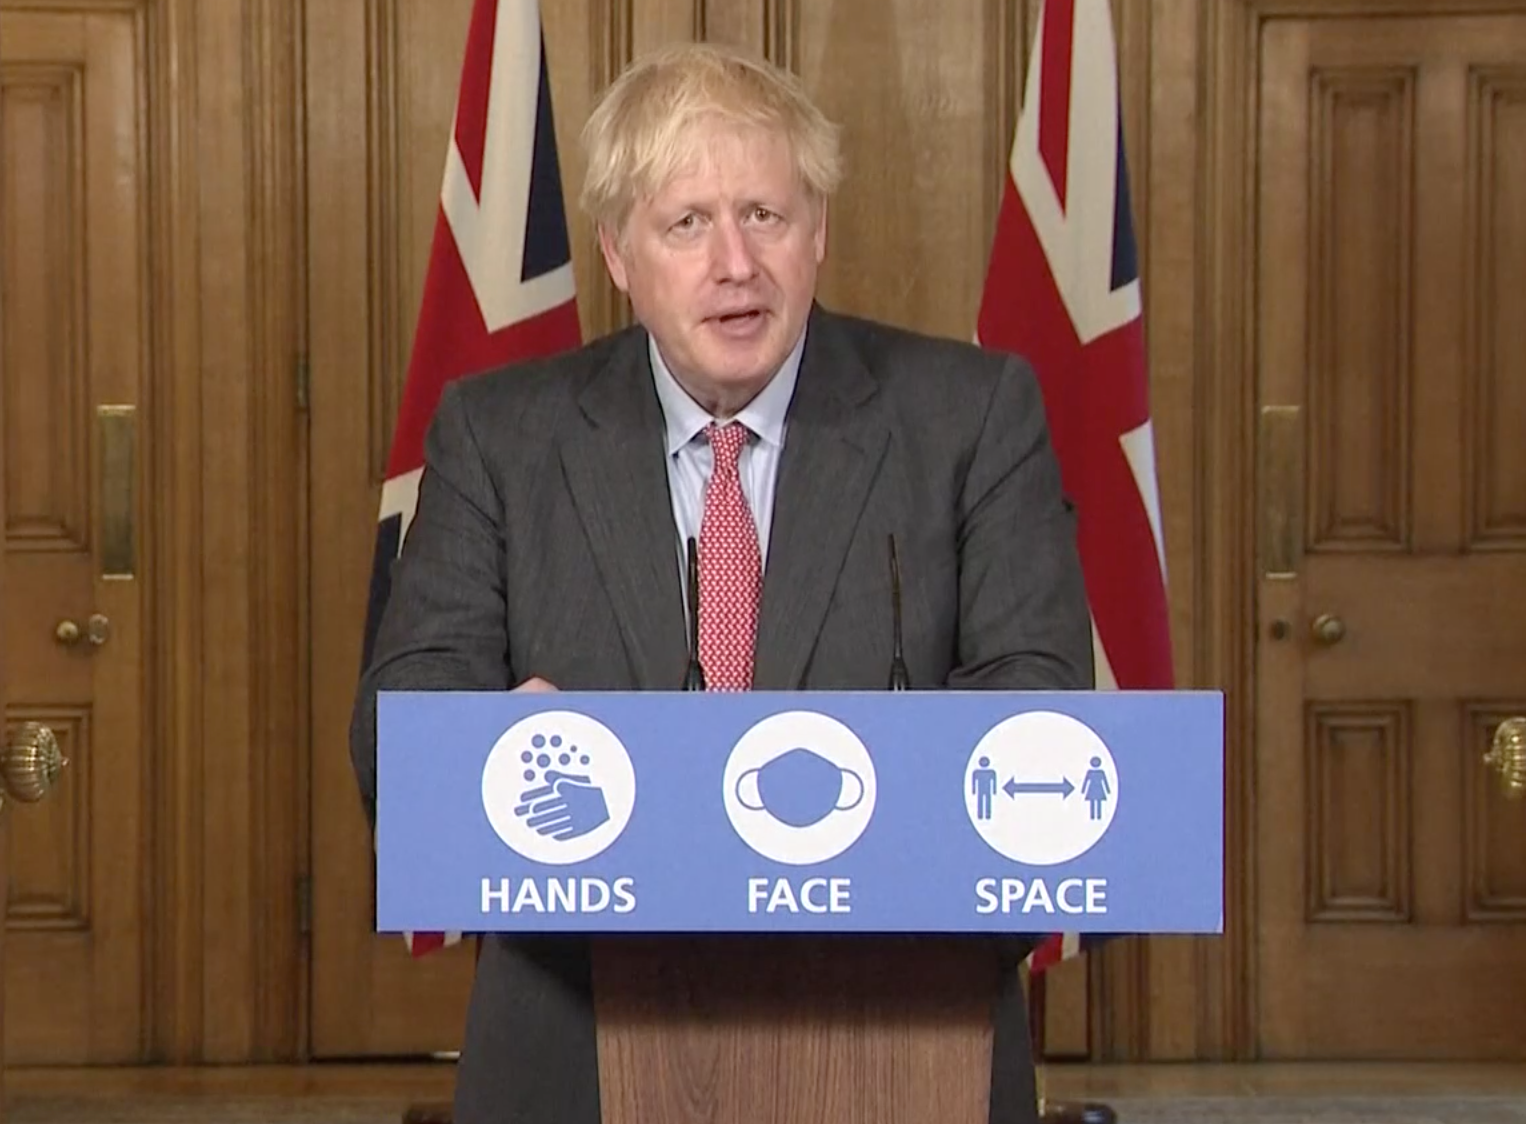 Boris Johnson briefs the public on the government's Covid-19 response